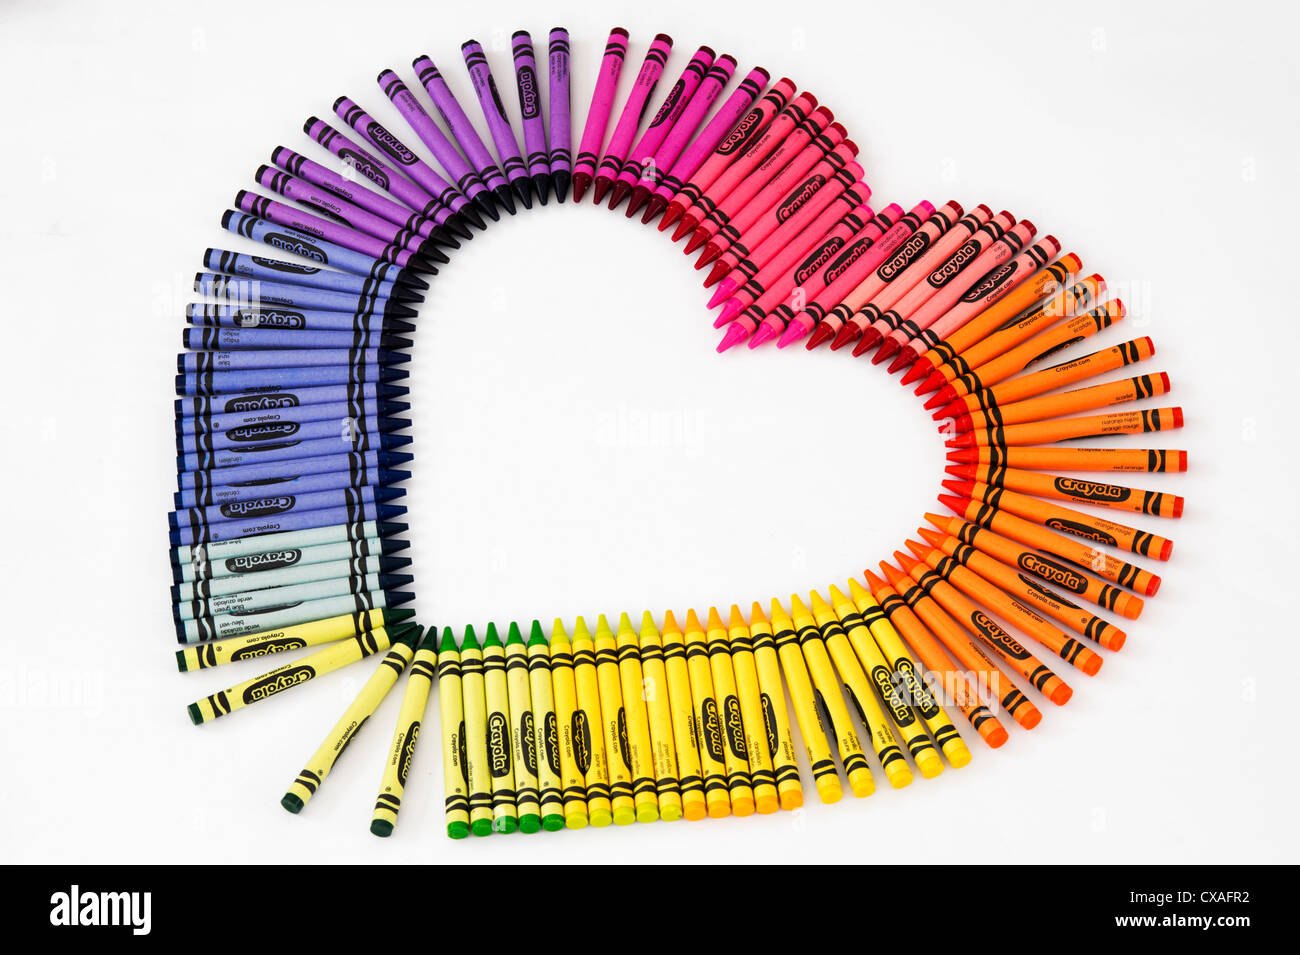 Les crayons de cire colorée en forme de coeur sur fond blanc Banque D'Images